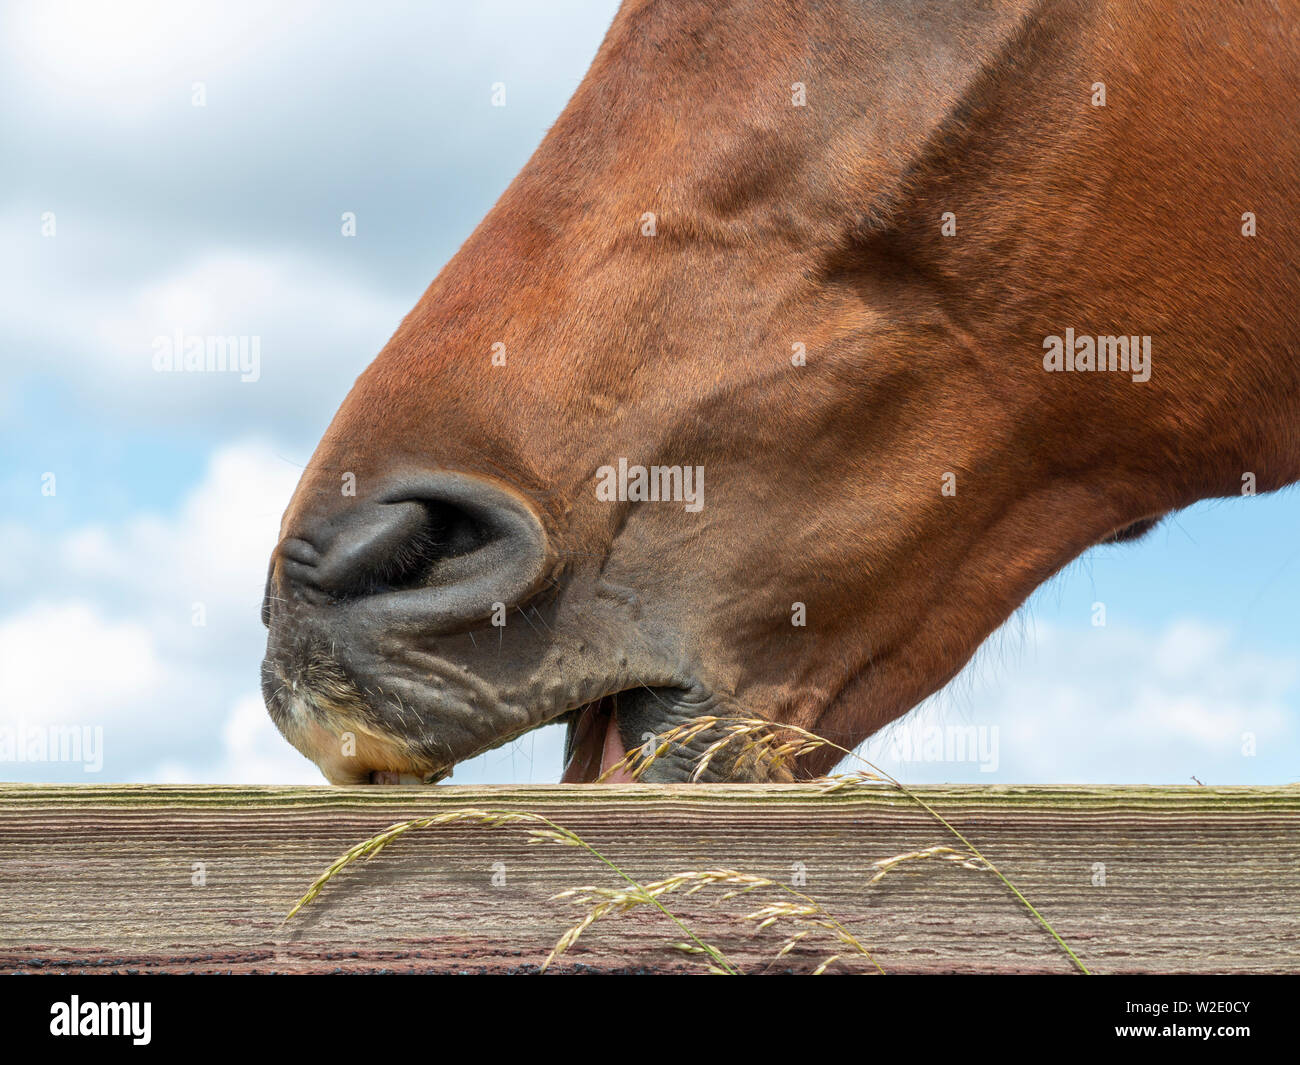 Eine Nahaufnahme der Pferde Kopf, das Tier wind saugen an einem Zaun Stockfoto